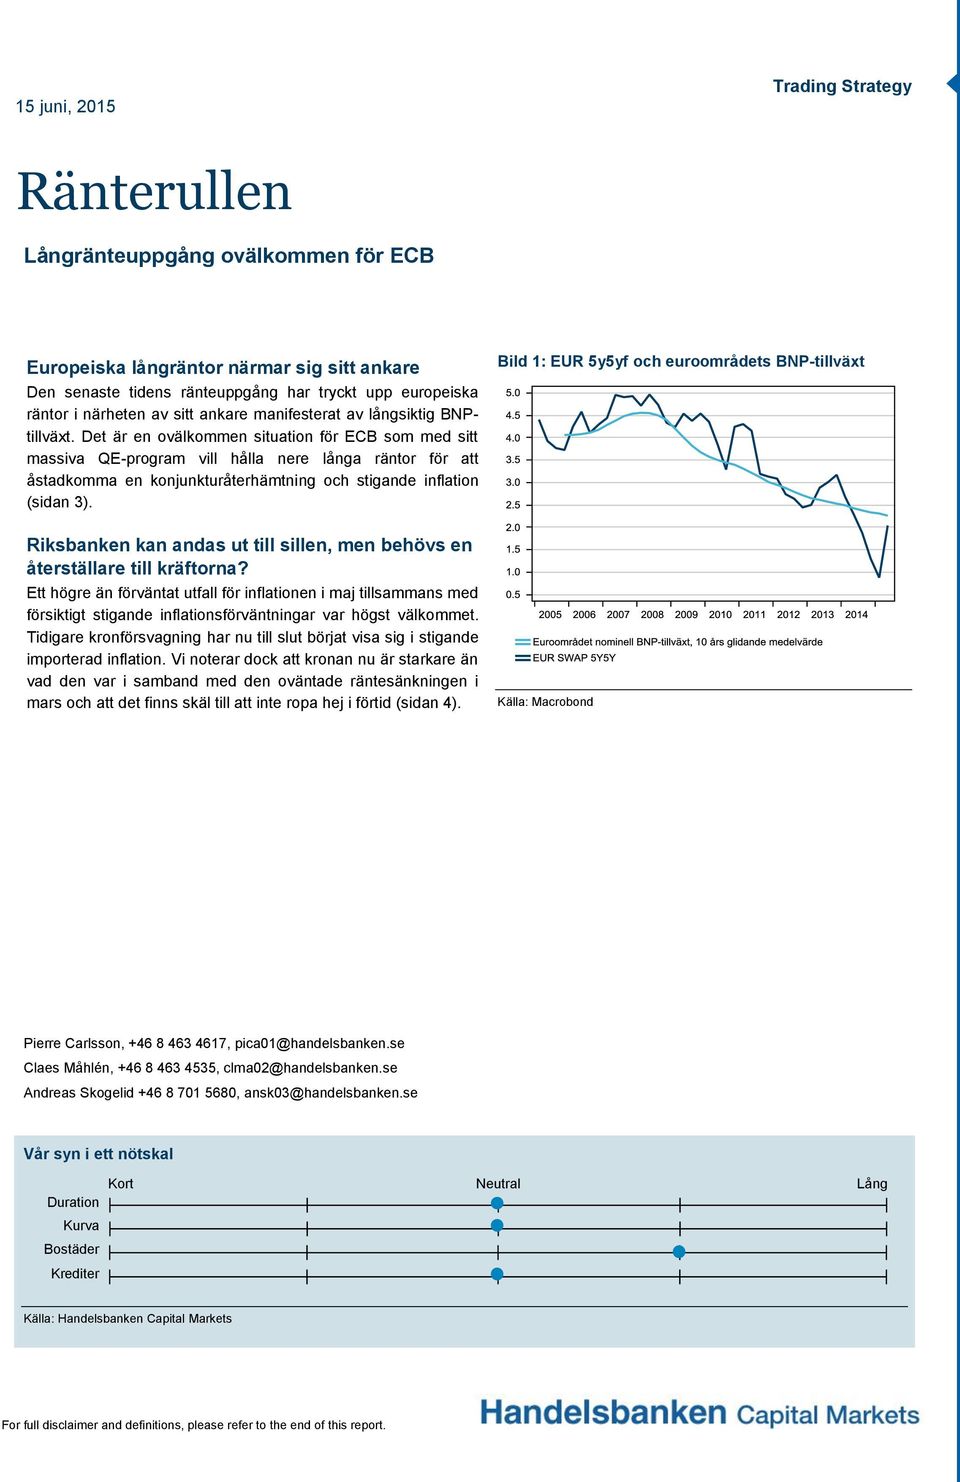 Det är en ovälkommen situation för ECB som med sitt massiva QE-program vill hålla nere långa räntor för att åstadkomma en konjunkturåterhämtning och stigande inflation (sidan 3).